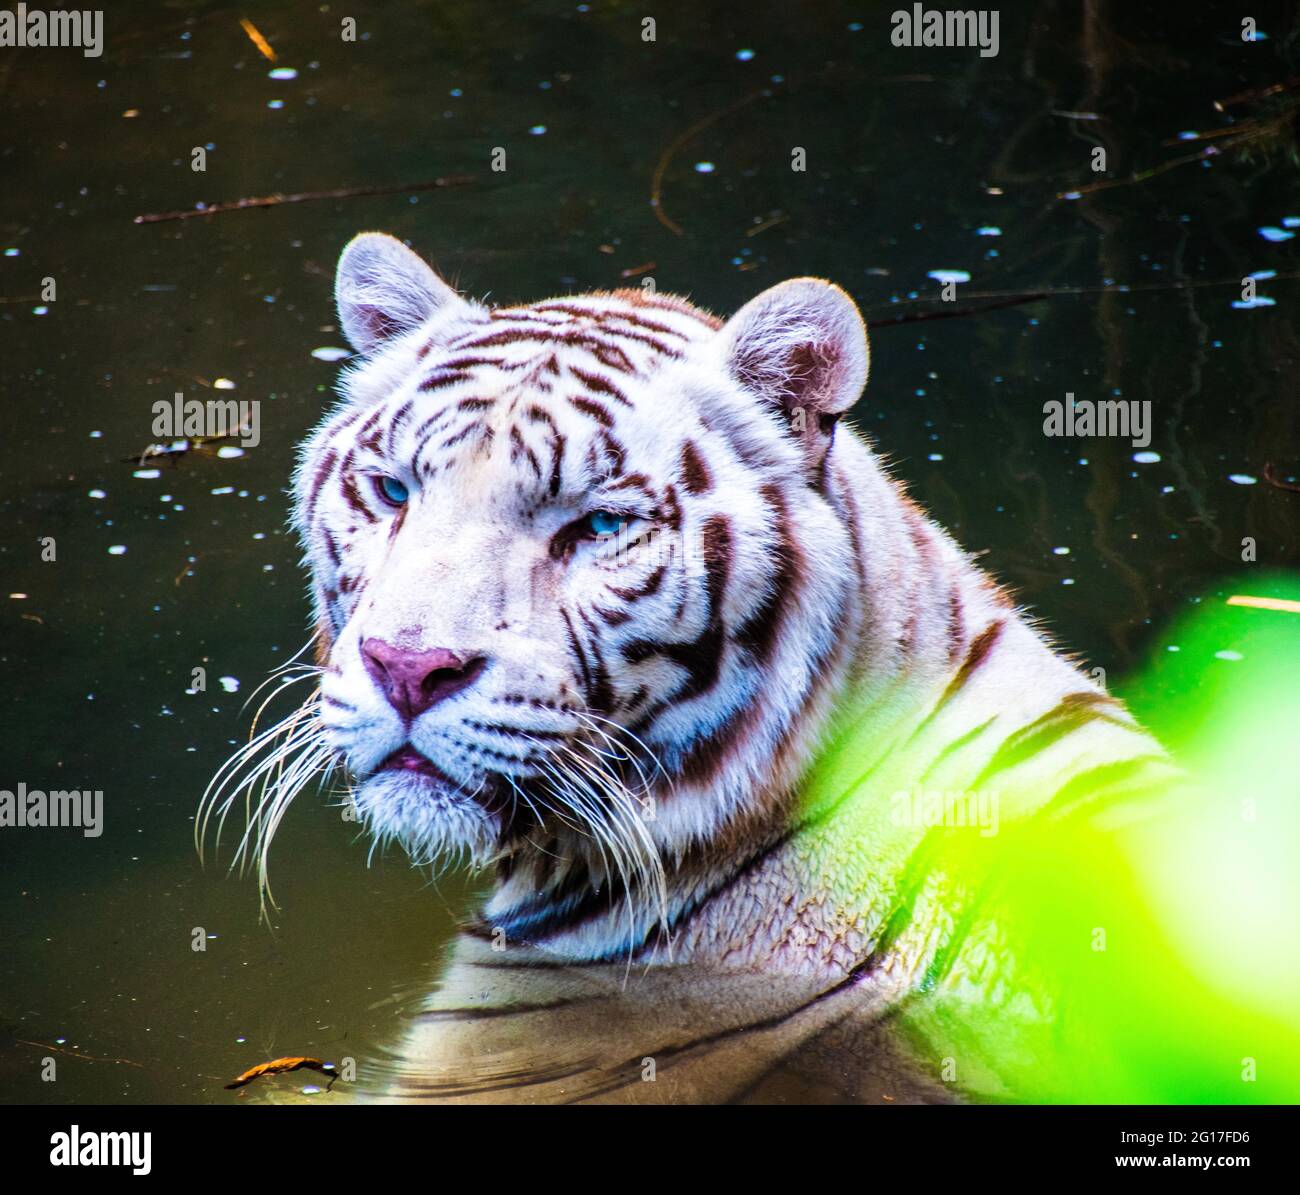 La tigre bianca o tigre sbiancata è una variante di pigmentazione leucistica delle tigri del Bengala, della tigre siberiana e degli ibridi artificiali tra i due, che. Foto Stock